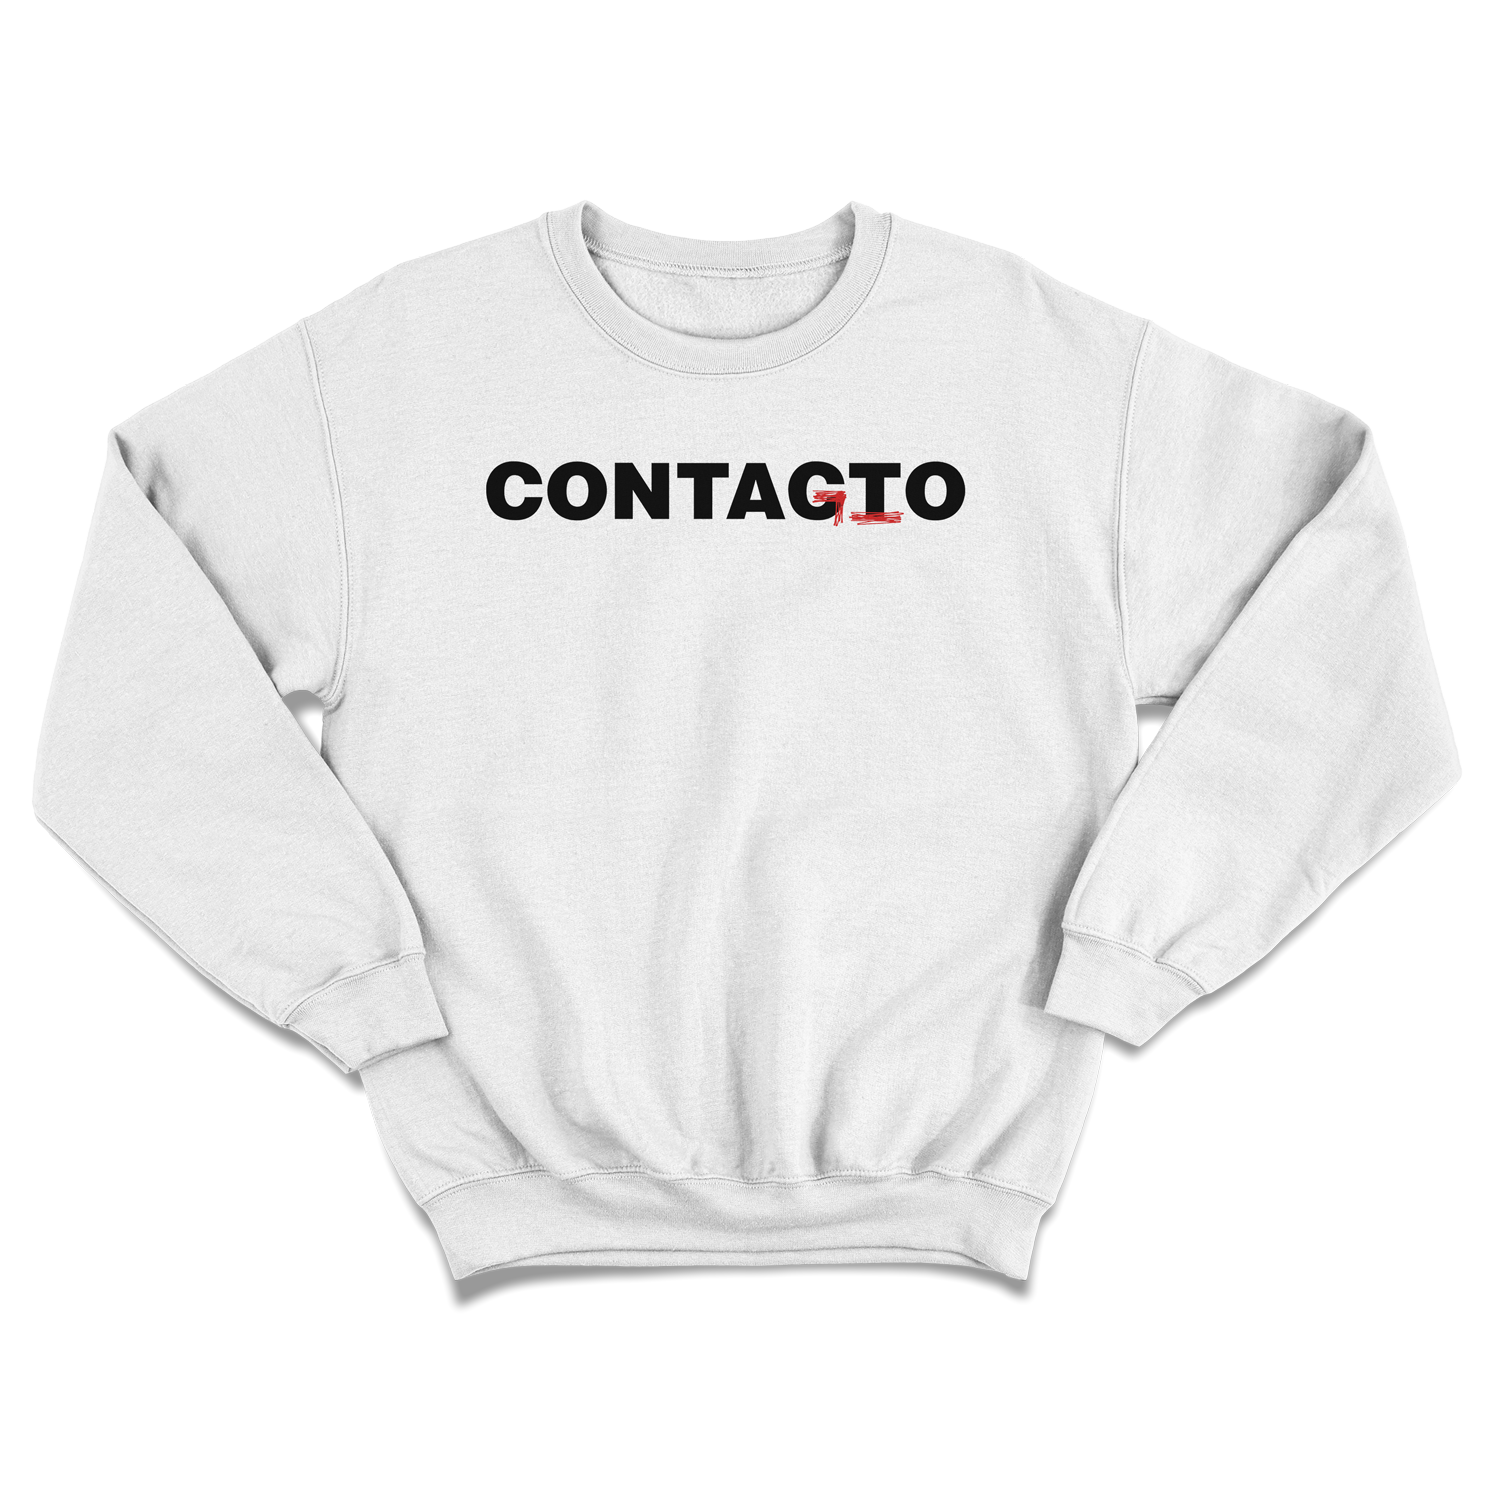 Print Contacto o contagio at 29.99€ from Estudio rarahuetes